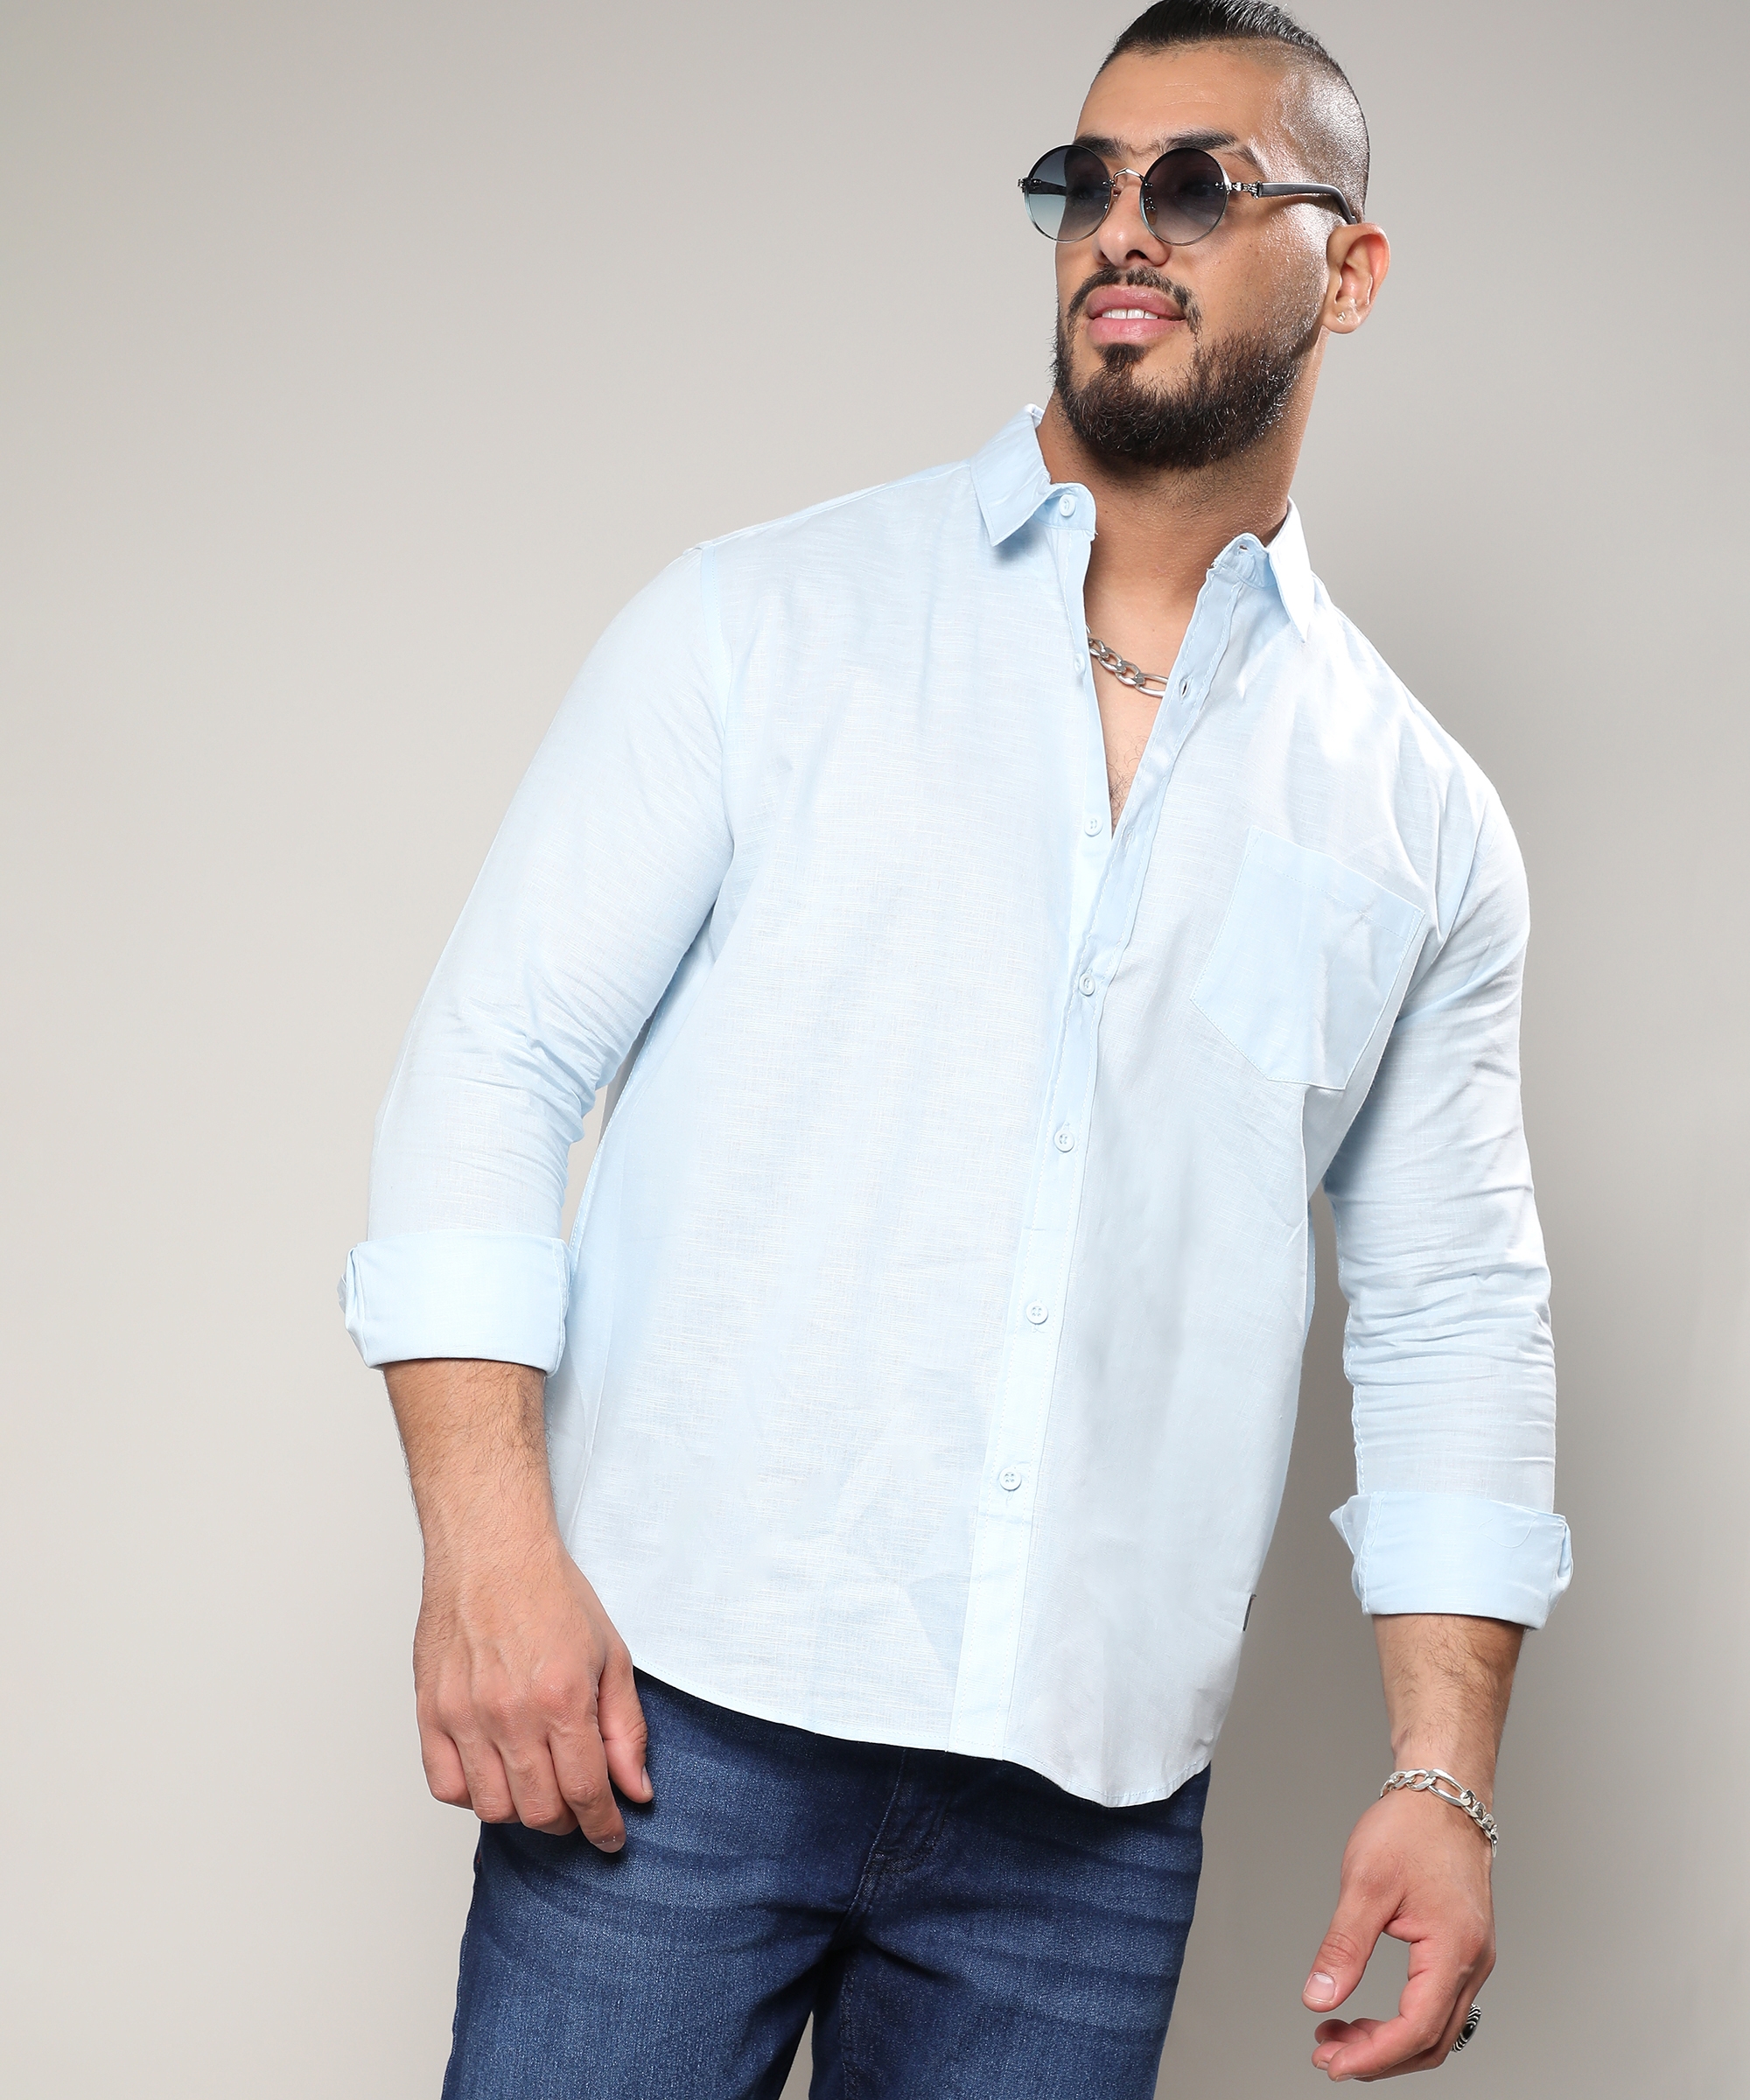 Men's Light Blue Classic Button- Up Shirt